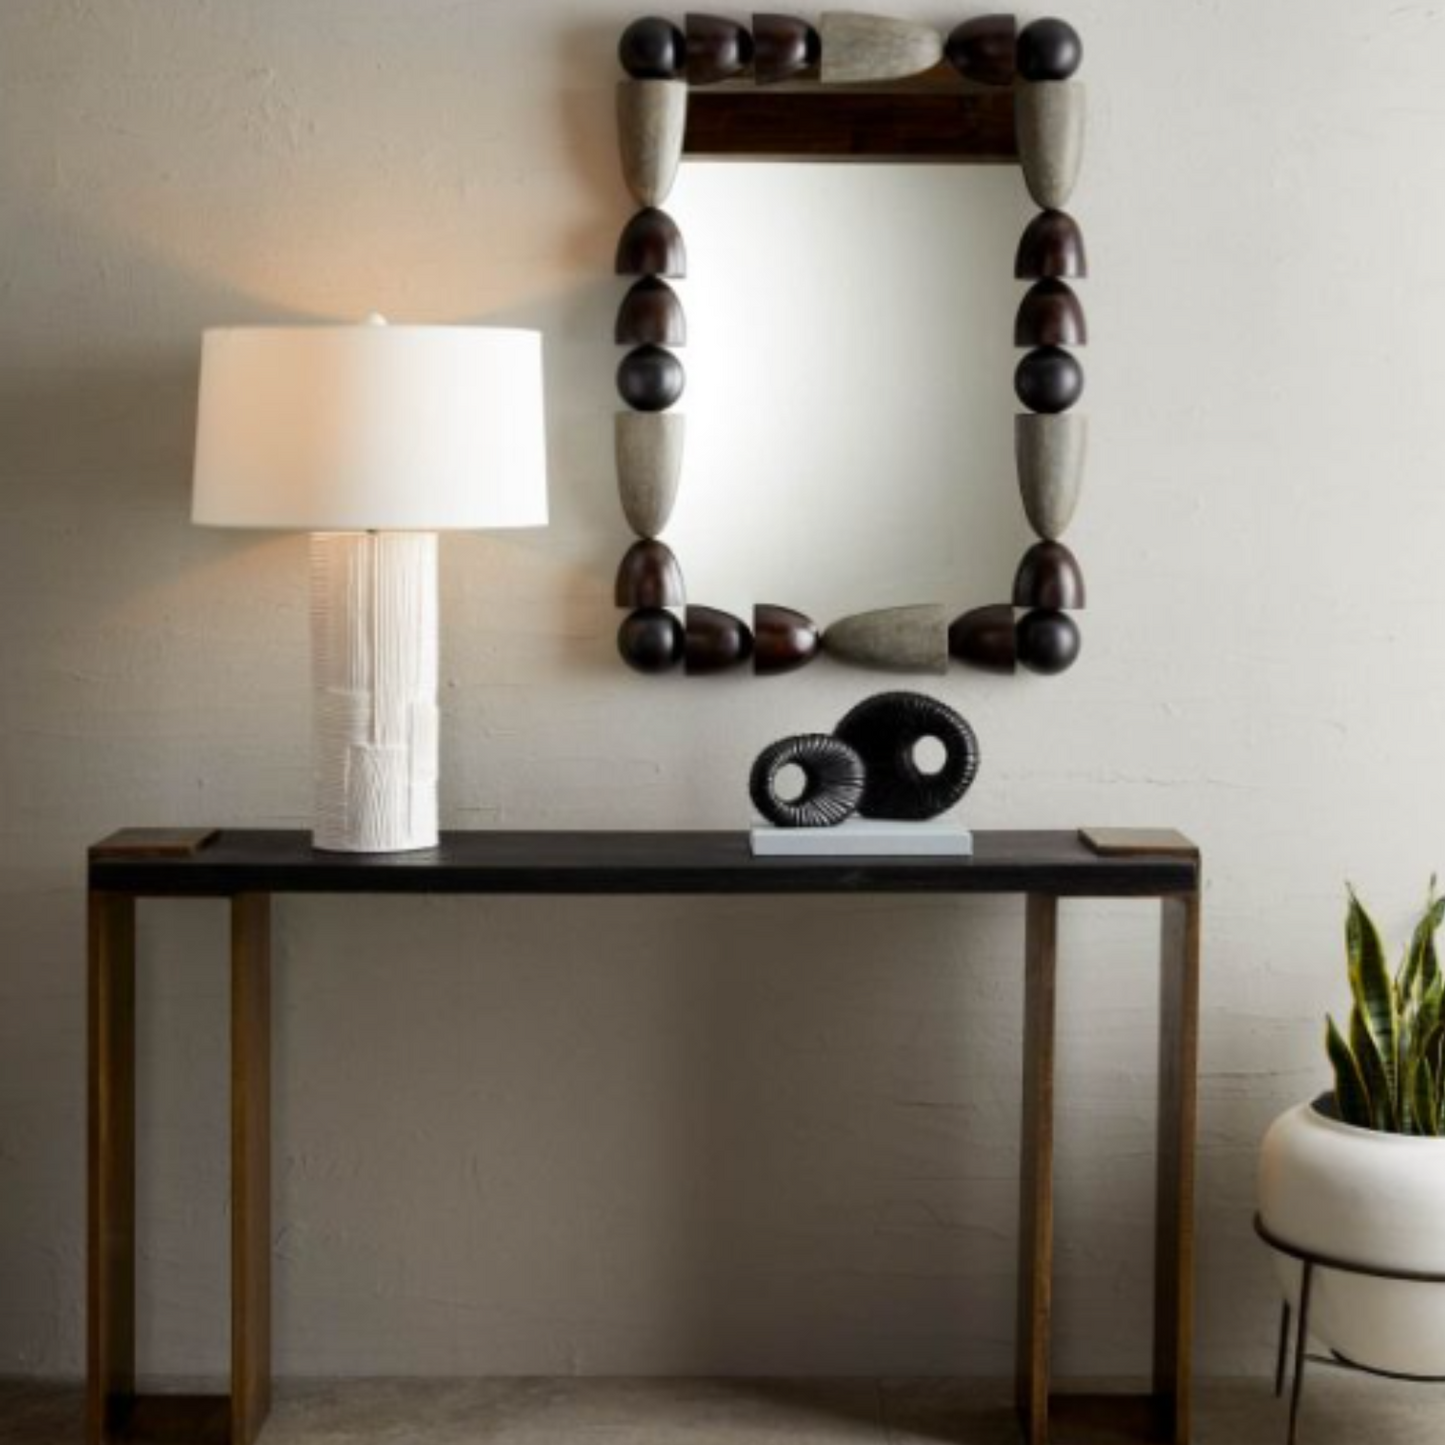 Montego Mirror - Geometric Oak Wood and Iron Frame, Ebony and Gray Wash Finish, Versatile Hanging Options